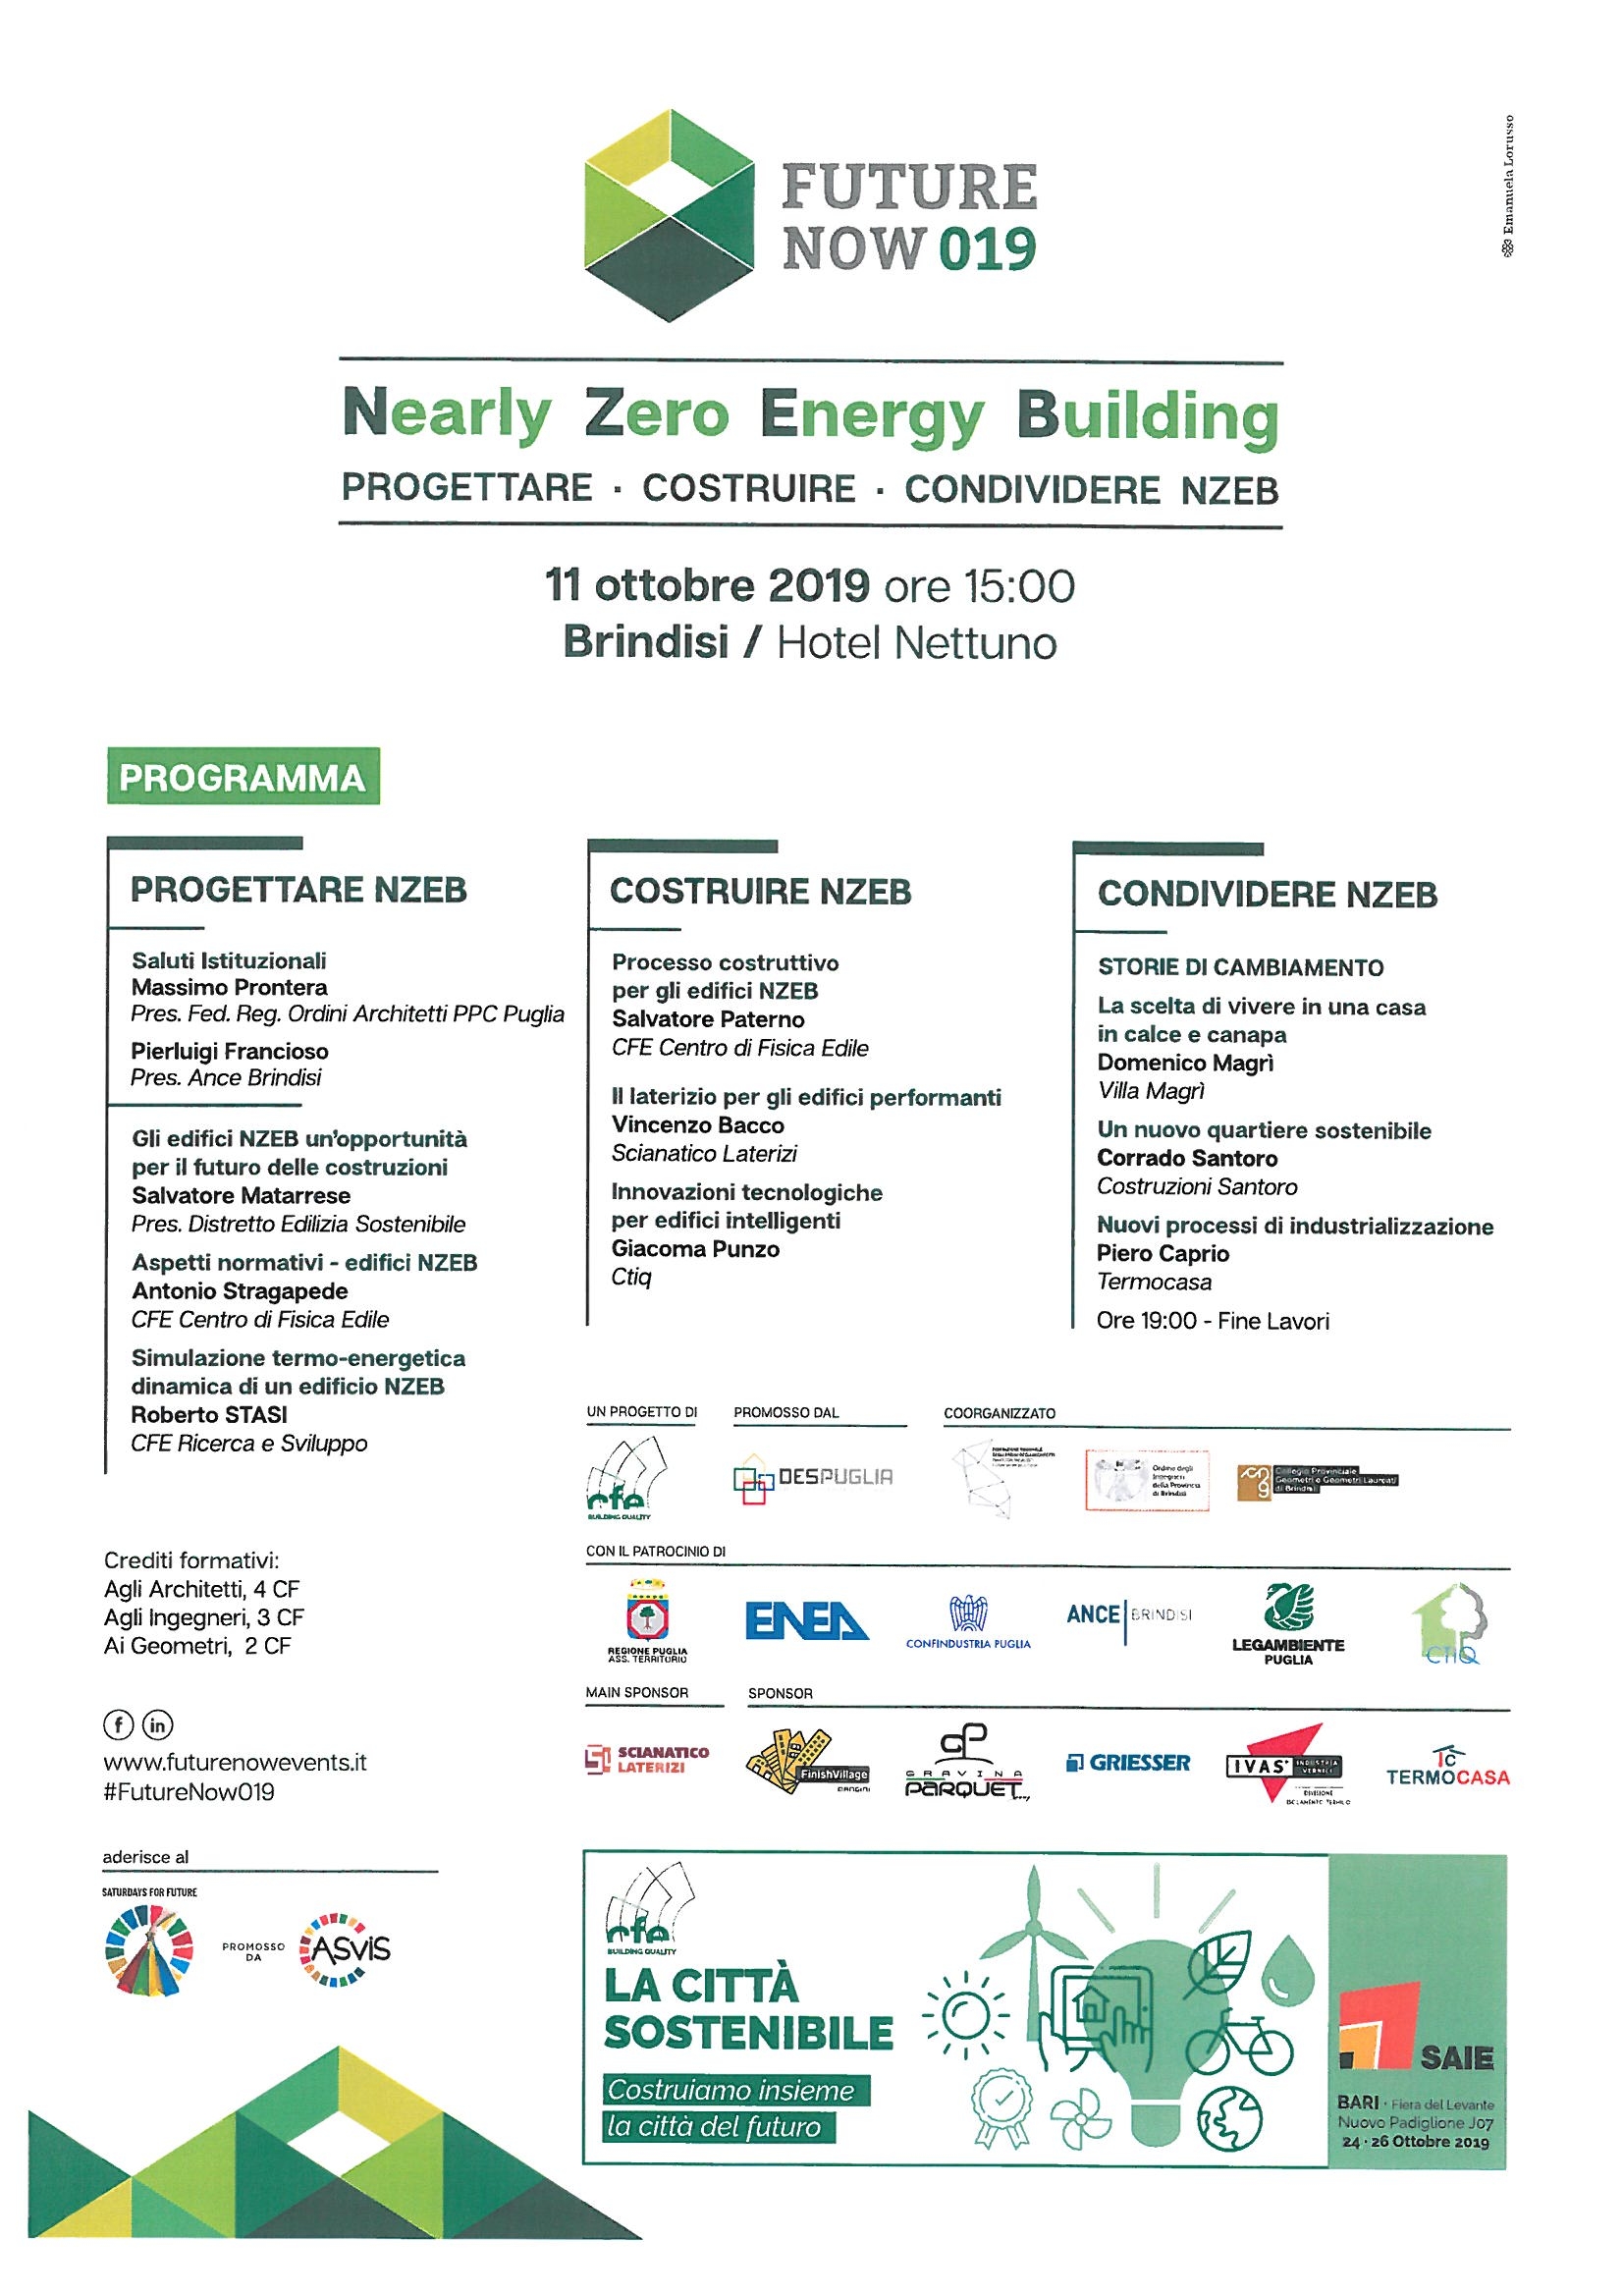 Nearly Zero Energy Building-PROGETTARE · COSTRUIRE · CONDIVIDERE NZEB